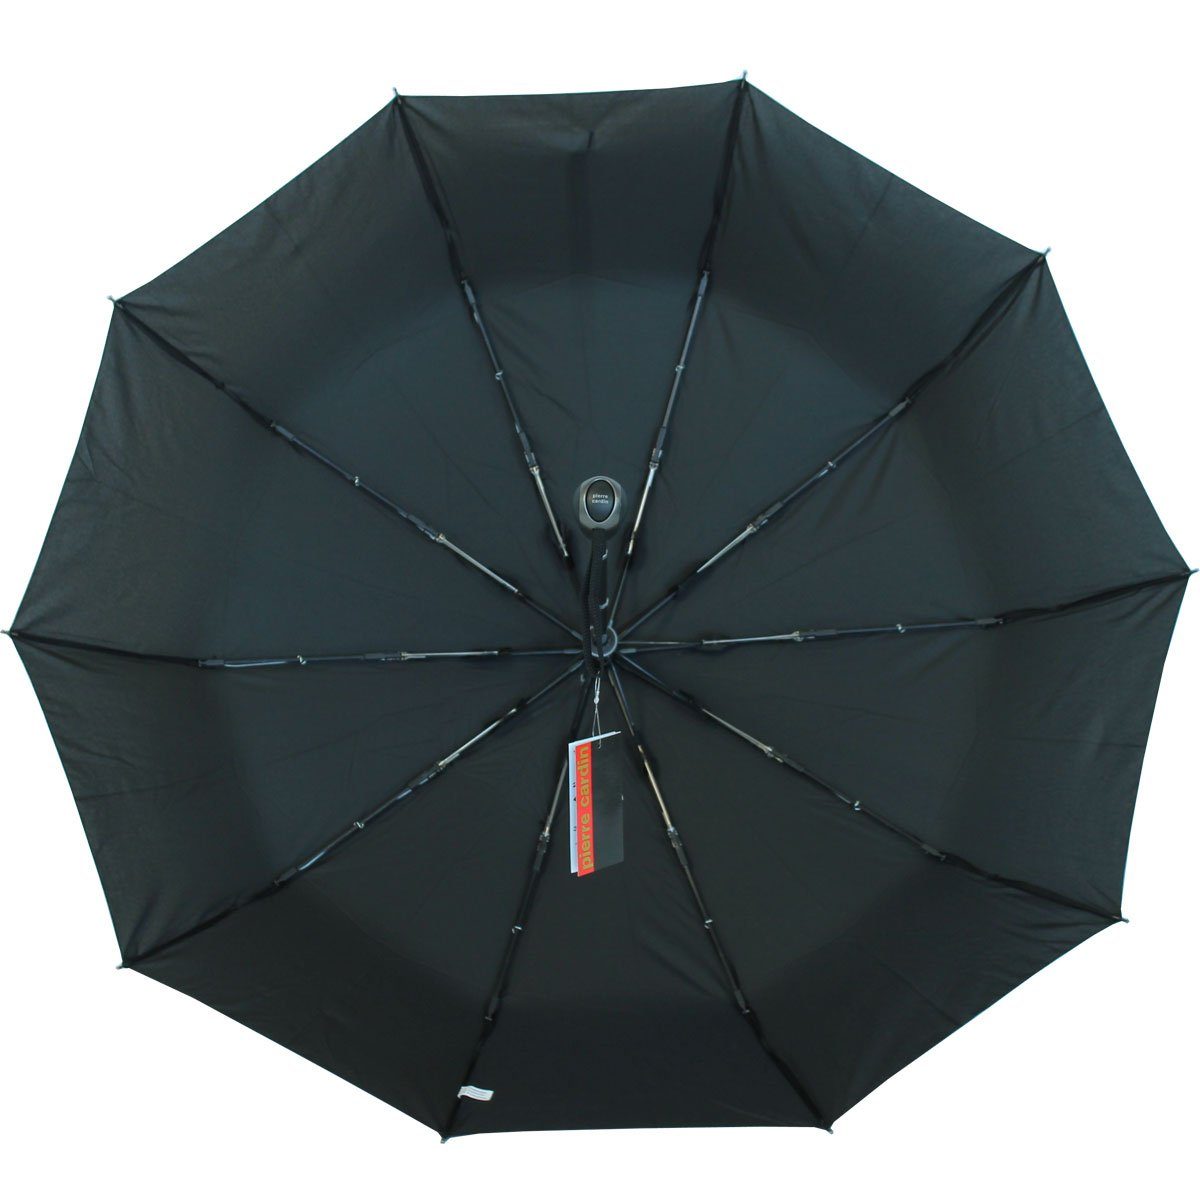 Zusatzstreben mit haltbares mit stabil Fiberglasgestell Pierre 10-teilig Cardin sturmfest Taschenregenschirm zwei Auf-Zu-Automatik,